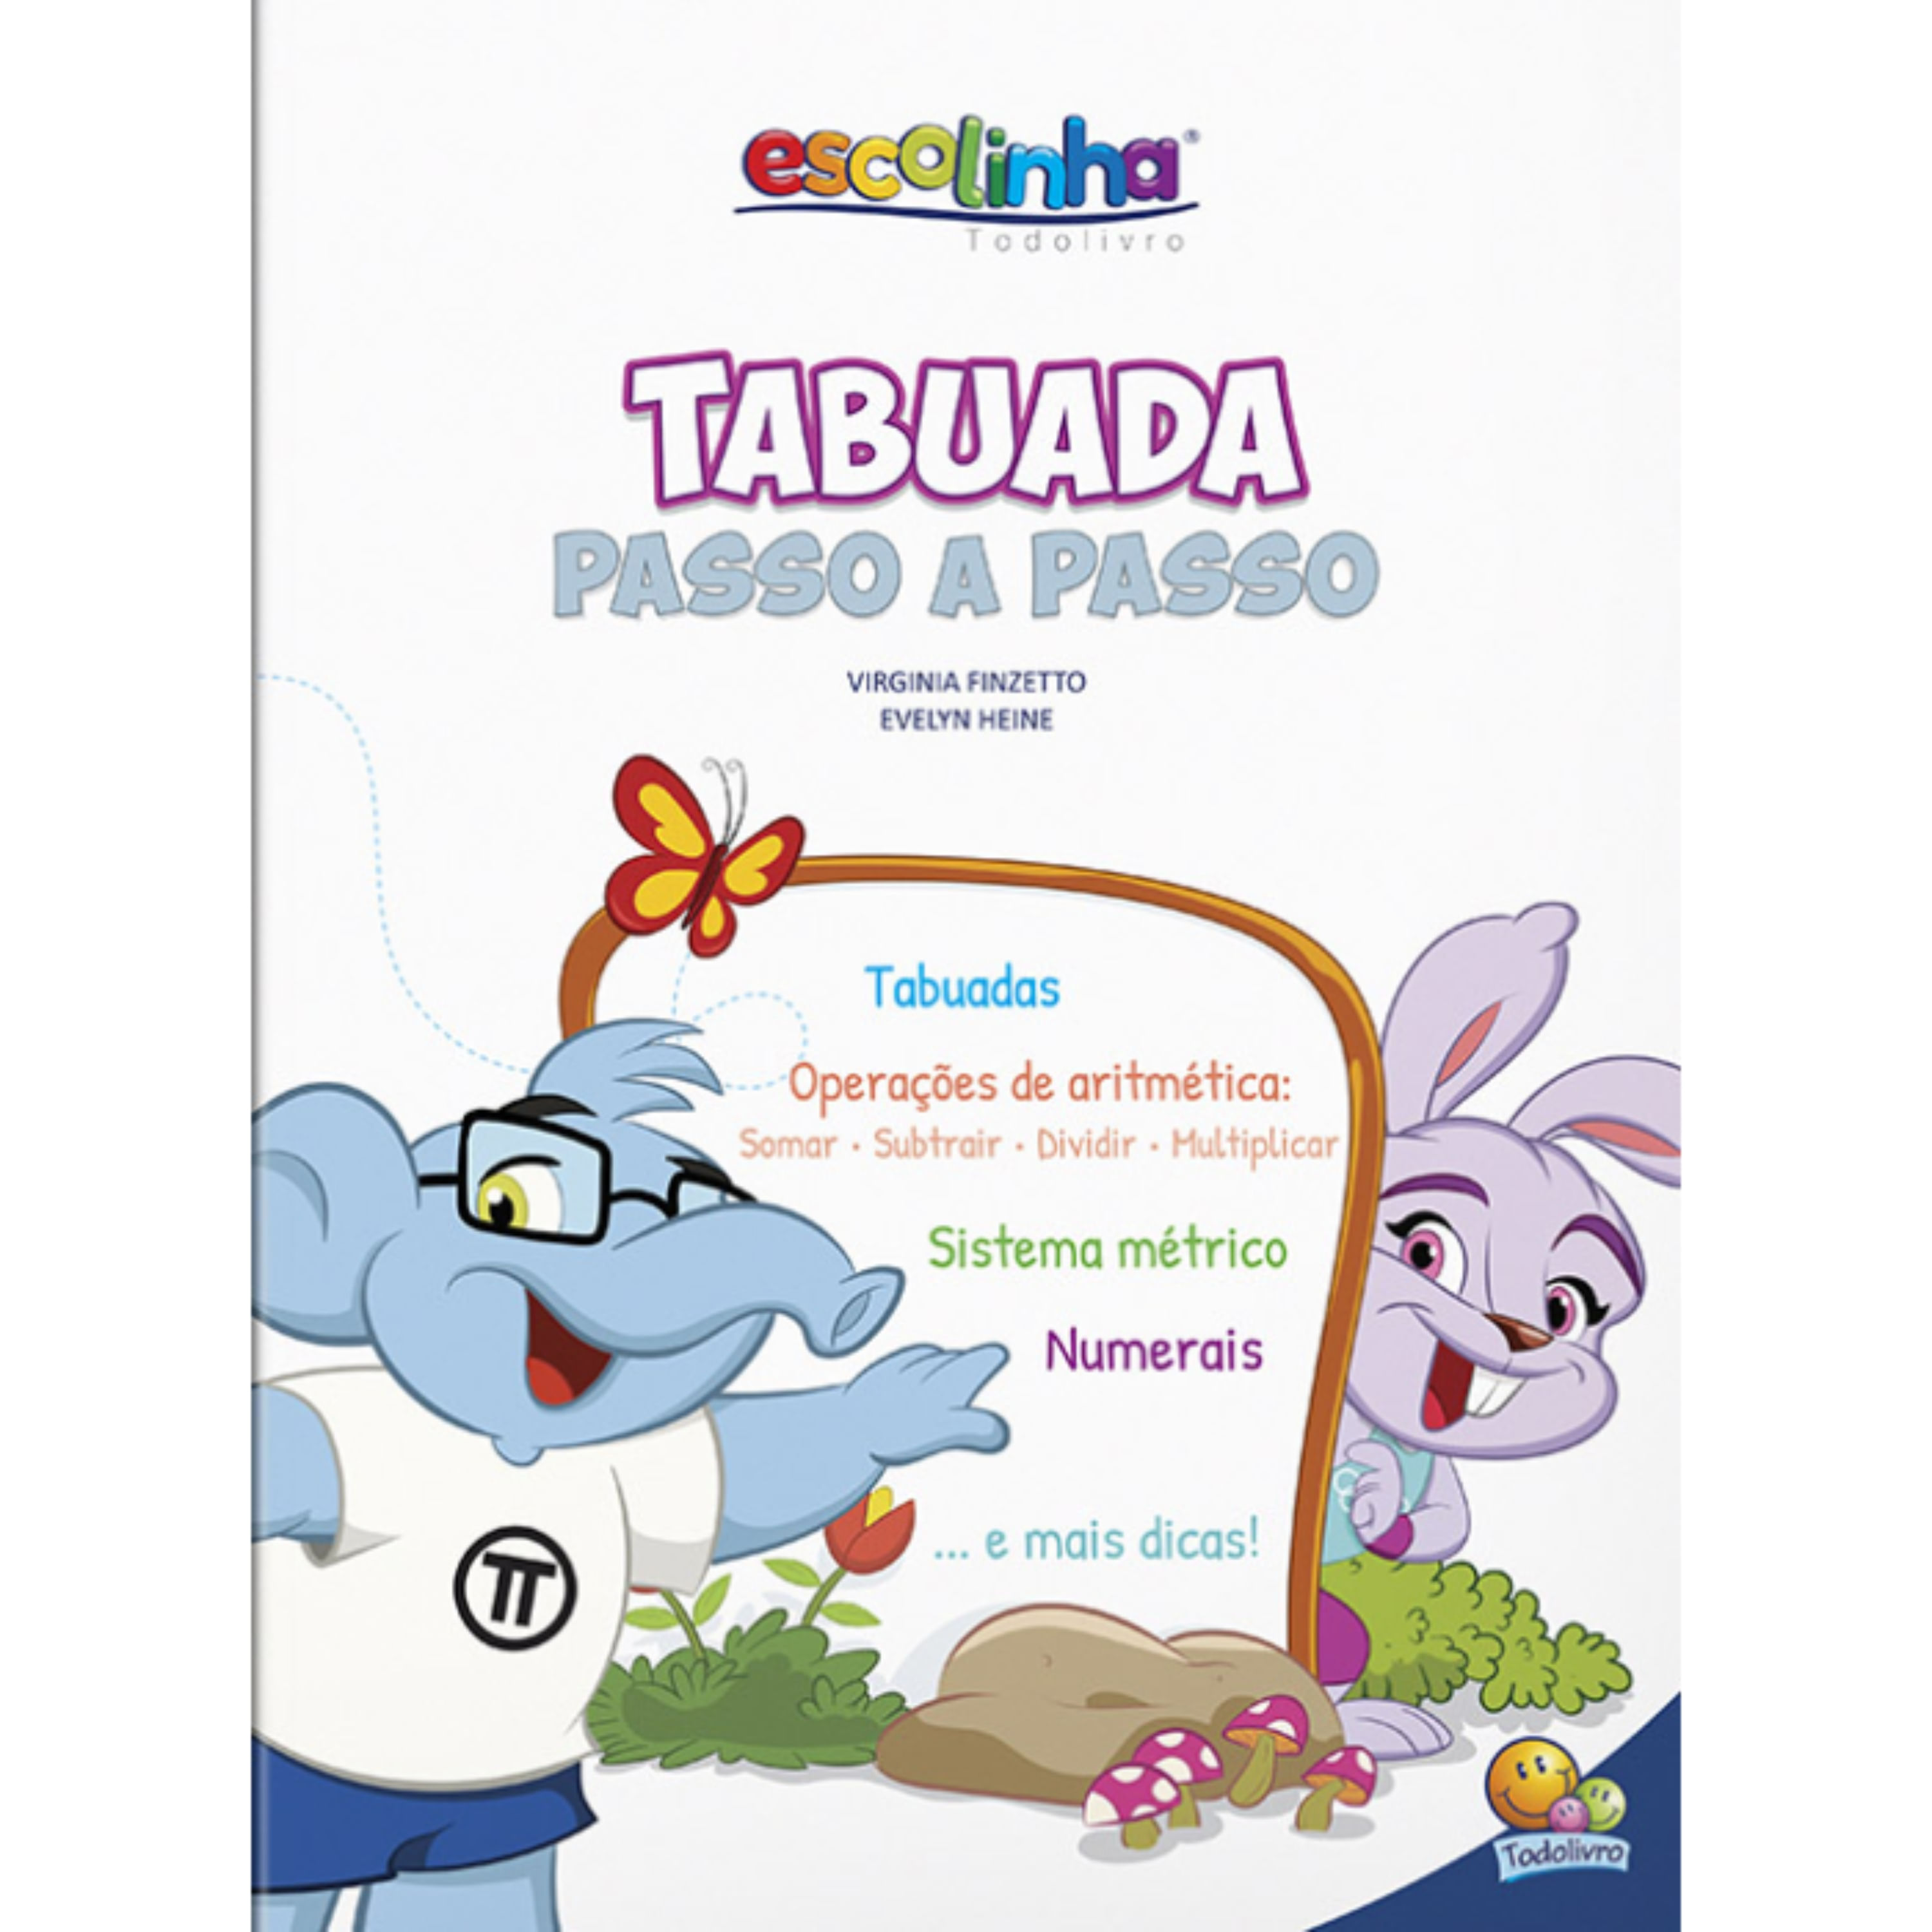 Livro Princesas Para Colorir Todolivro - papelariamalibu